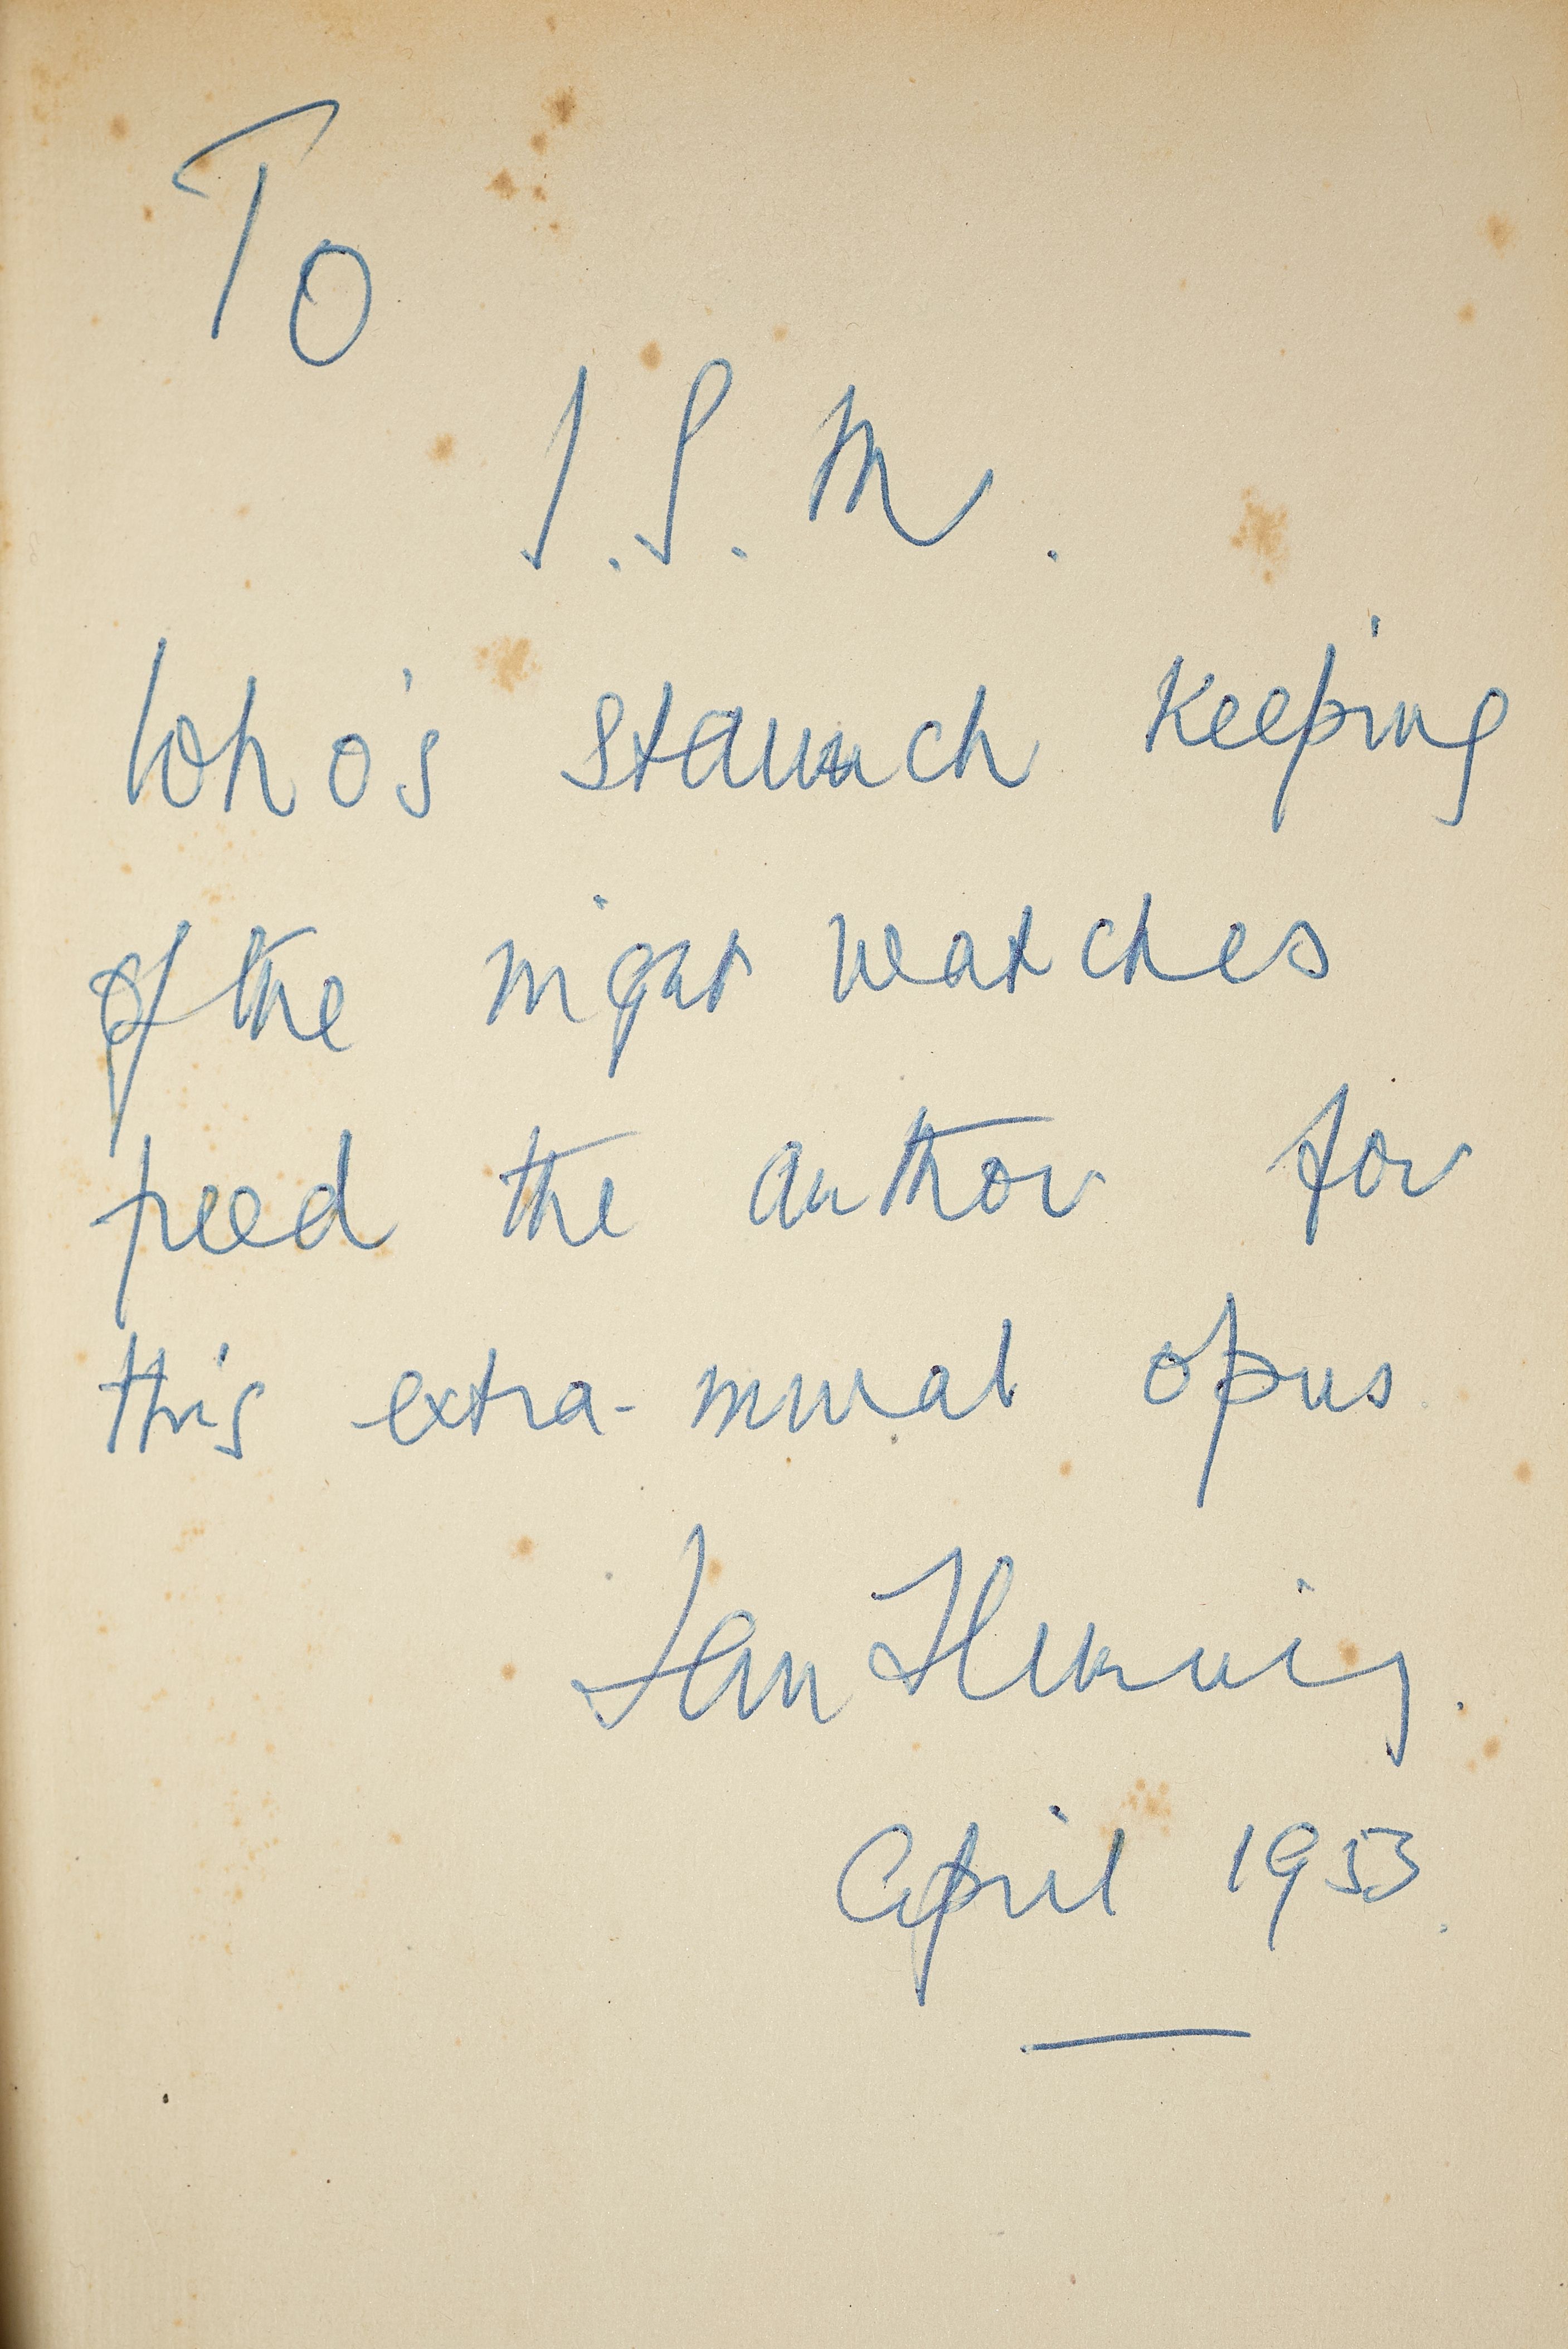 A handwritten inscription from Ian Fleming